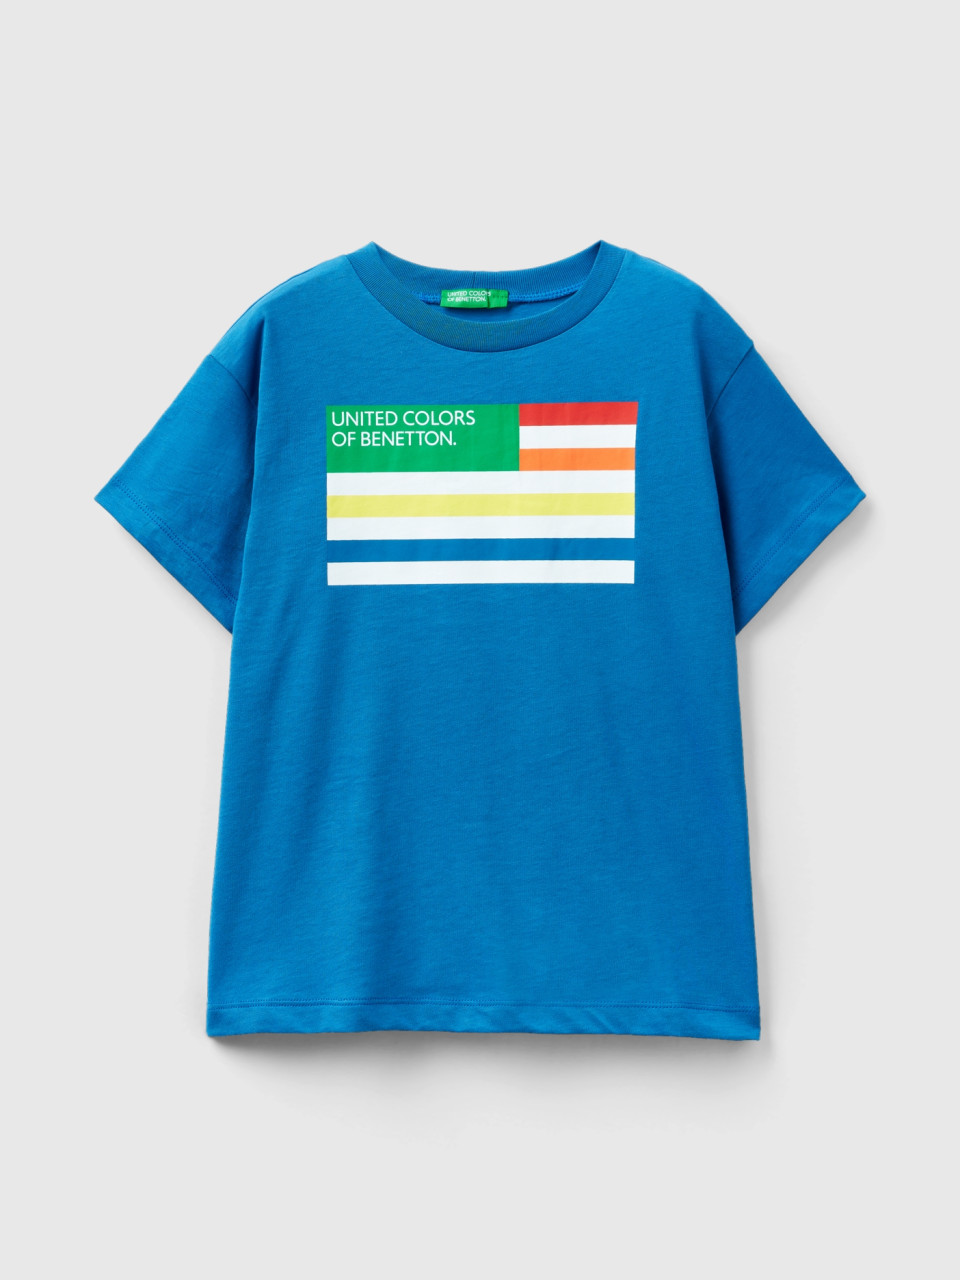 Benetton, 100% Organic Cotton T-shirt, Blue, Kids